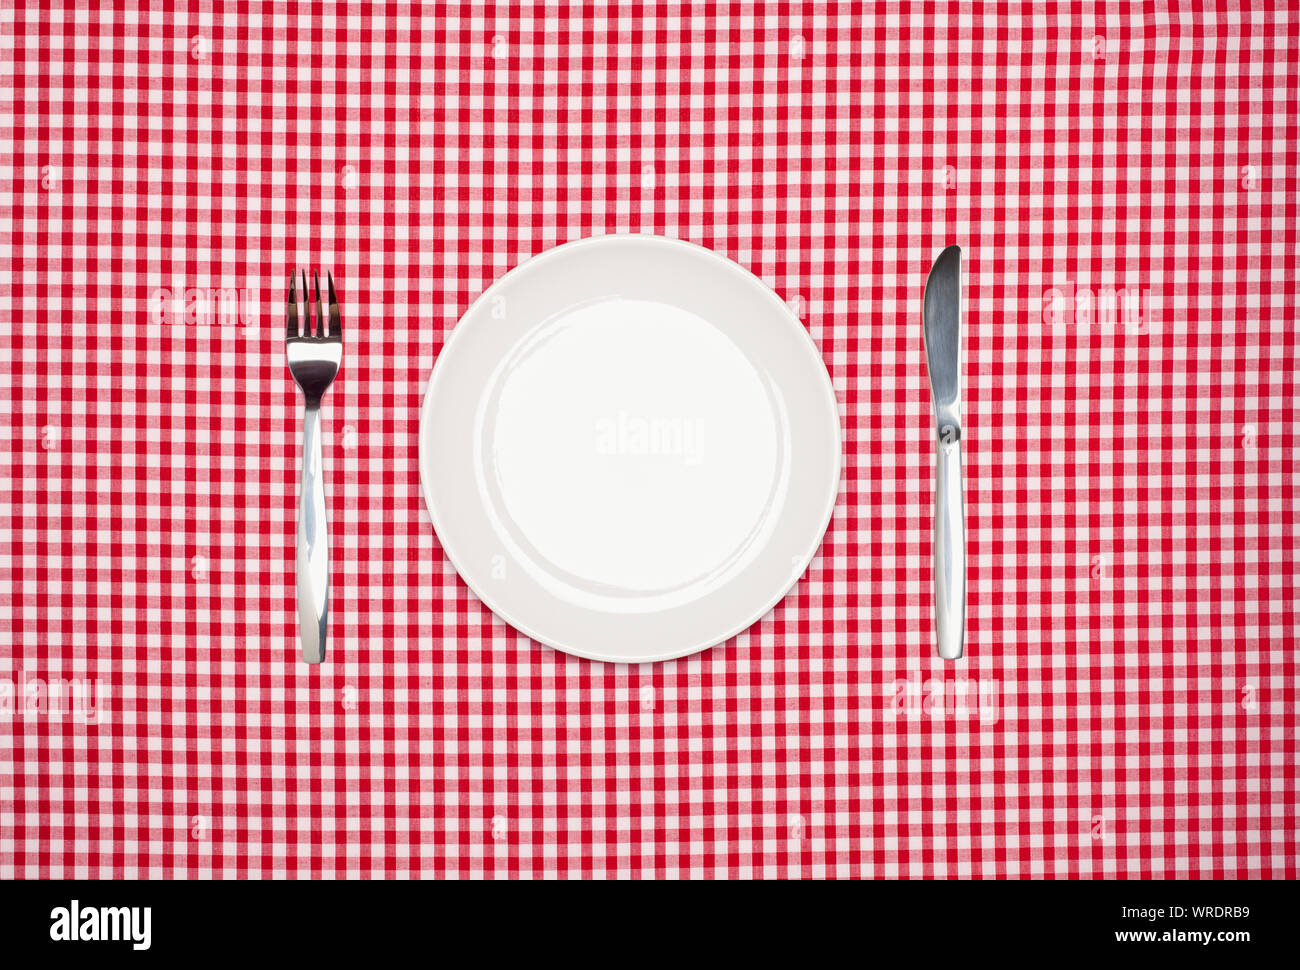 Place Setting, placa blanca redonda, cuchillo y tenedor, desde arriba sobre un mantel de tela de algodón a cuadros rojo Foto de stock